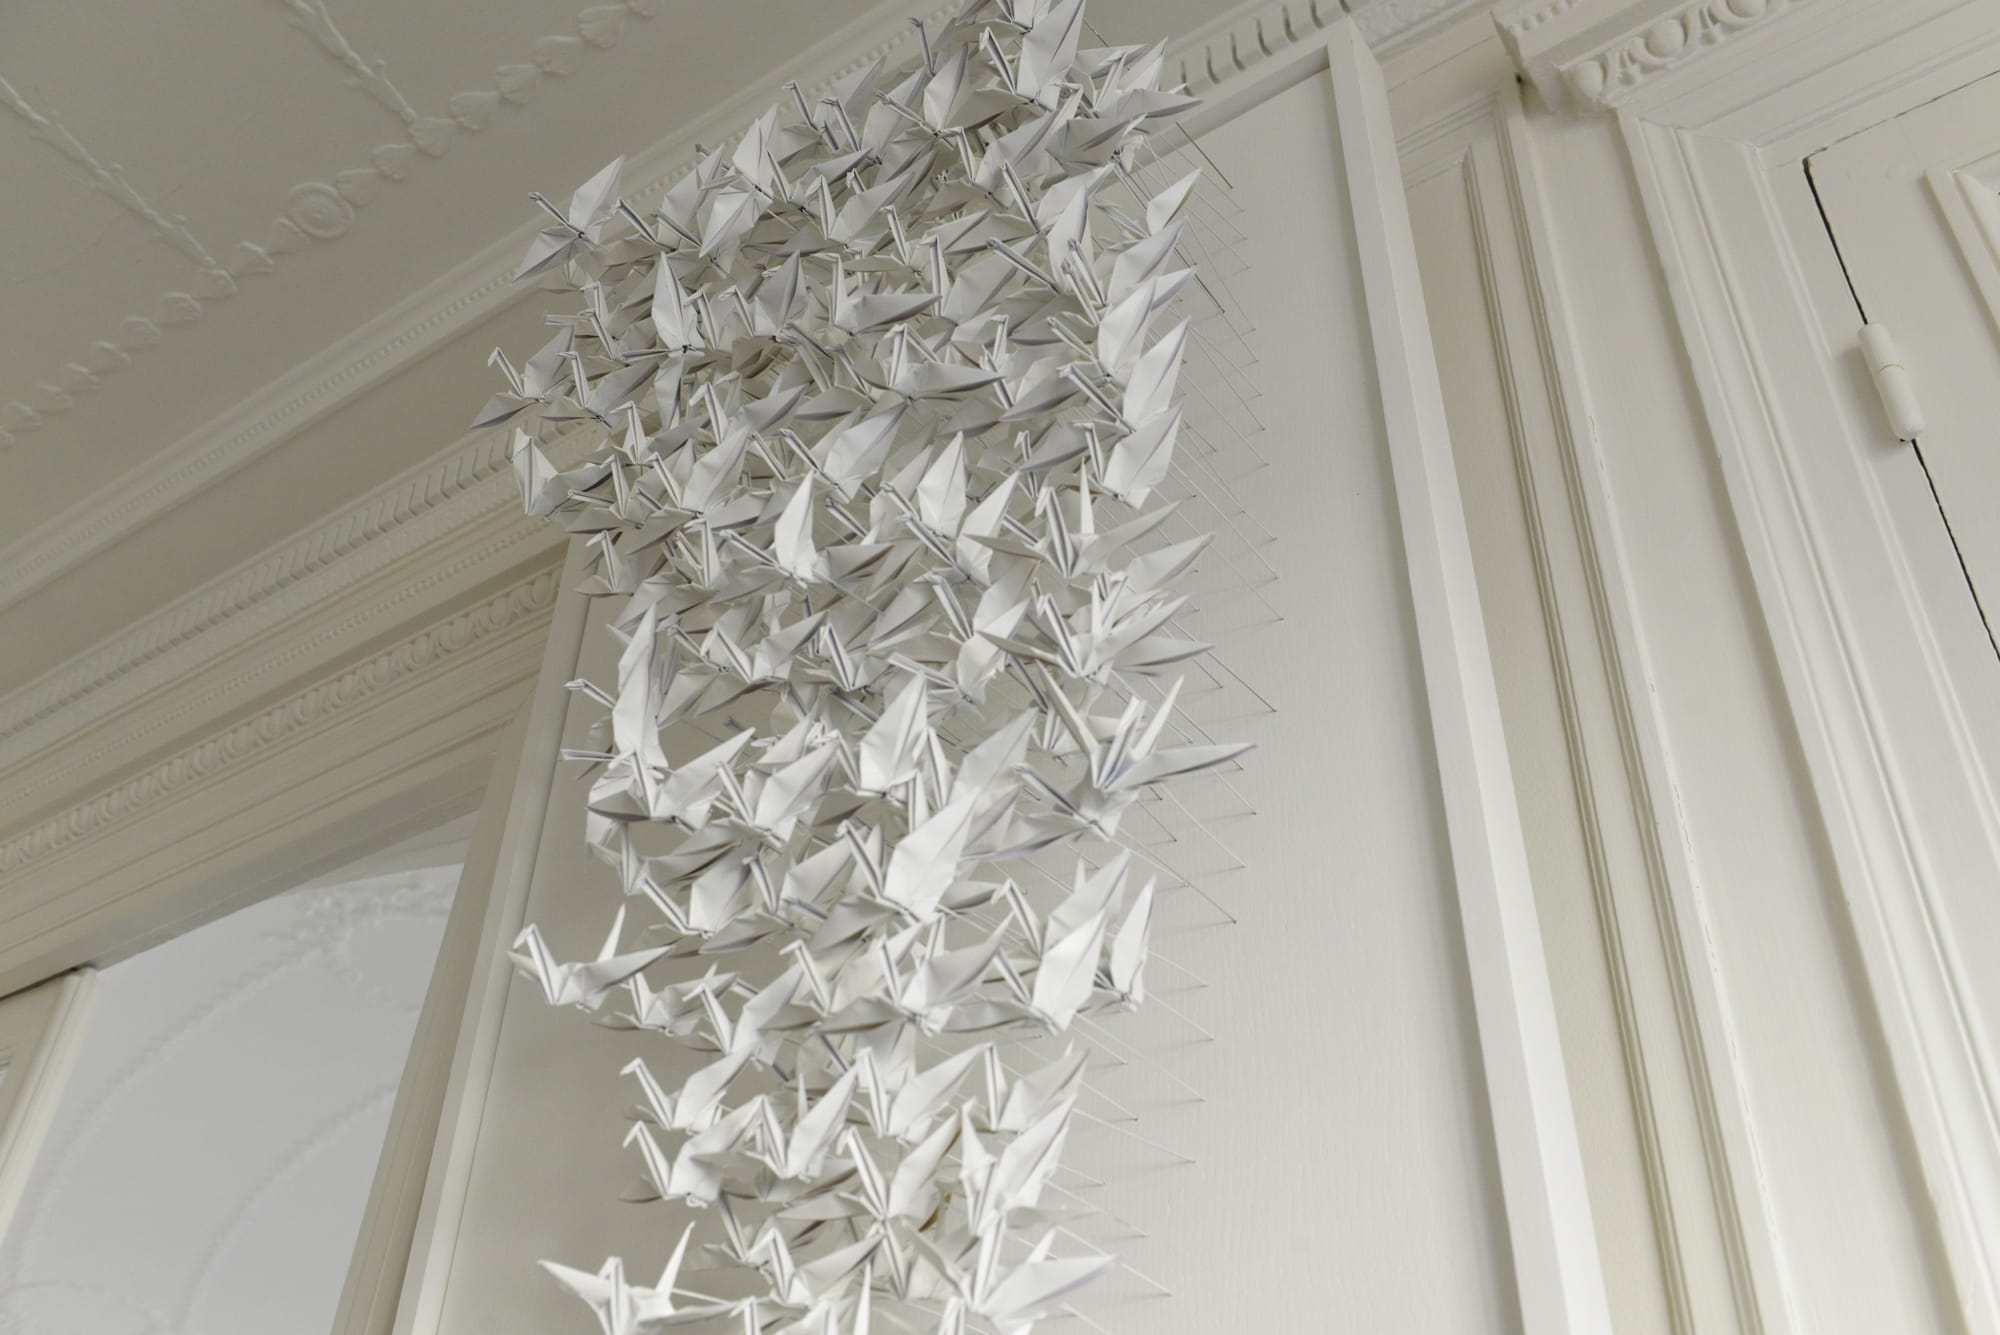 アトリエのデコレーション。ひとつひとつ紙で折られた白い鶴のオブジェはフランス人の知人による作品という。